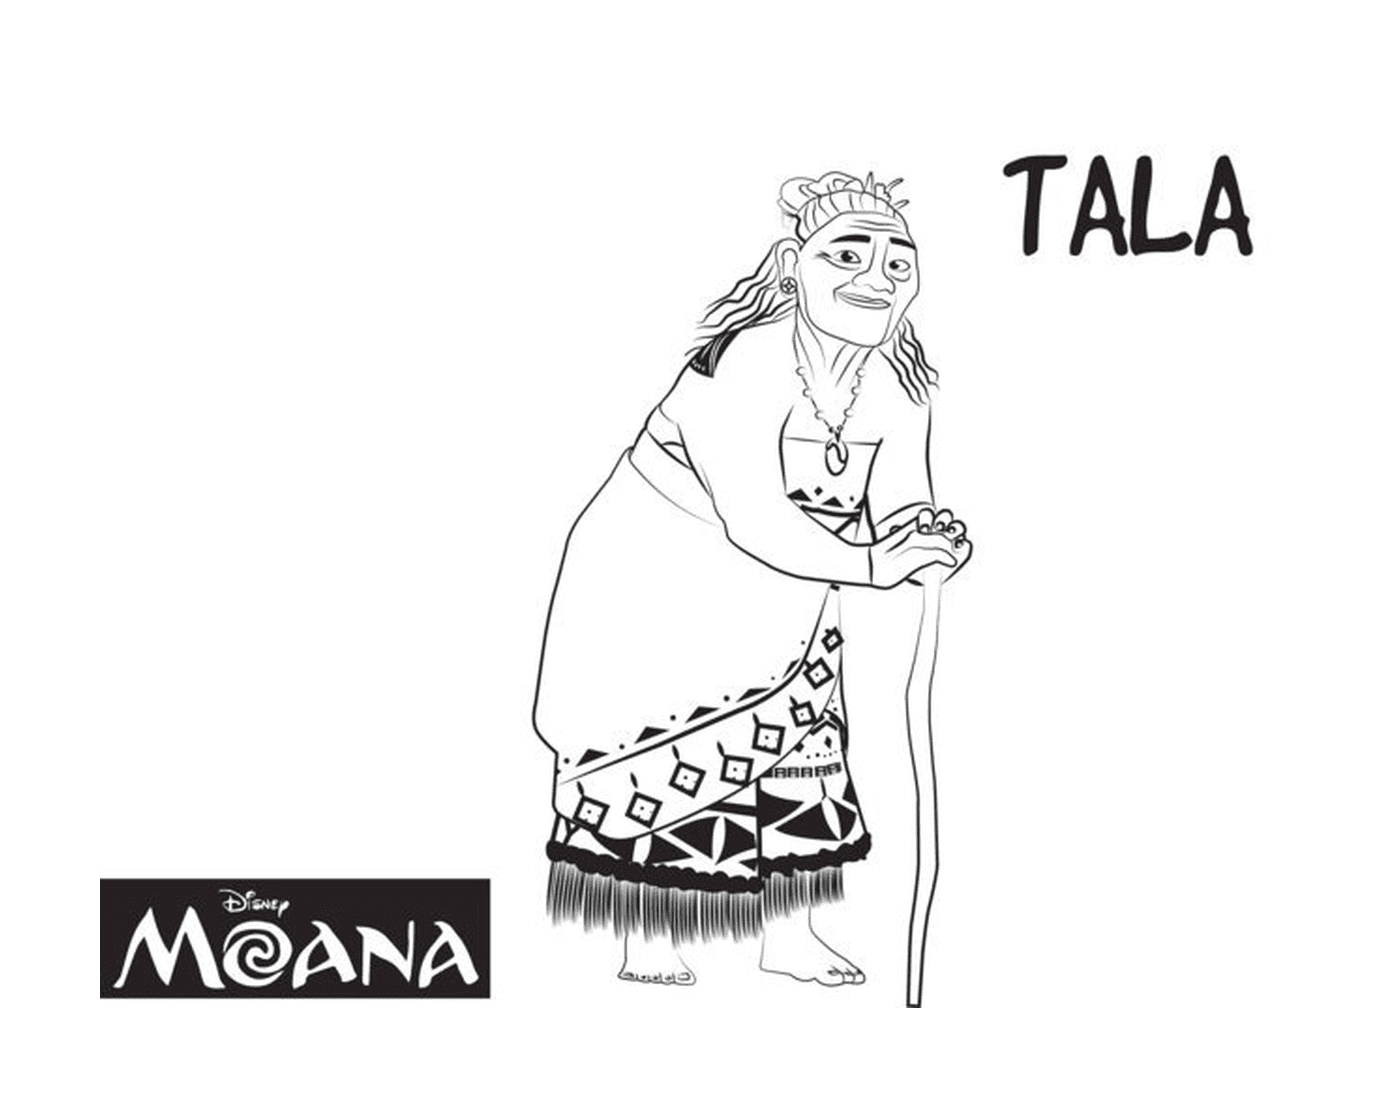   Tala, gardienne spirituelle de Moana 